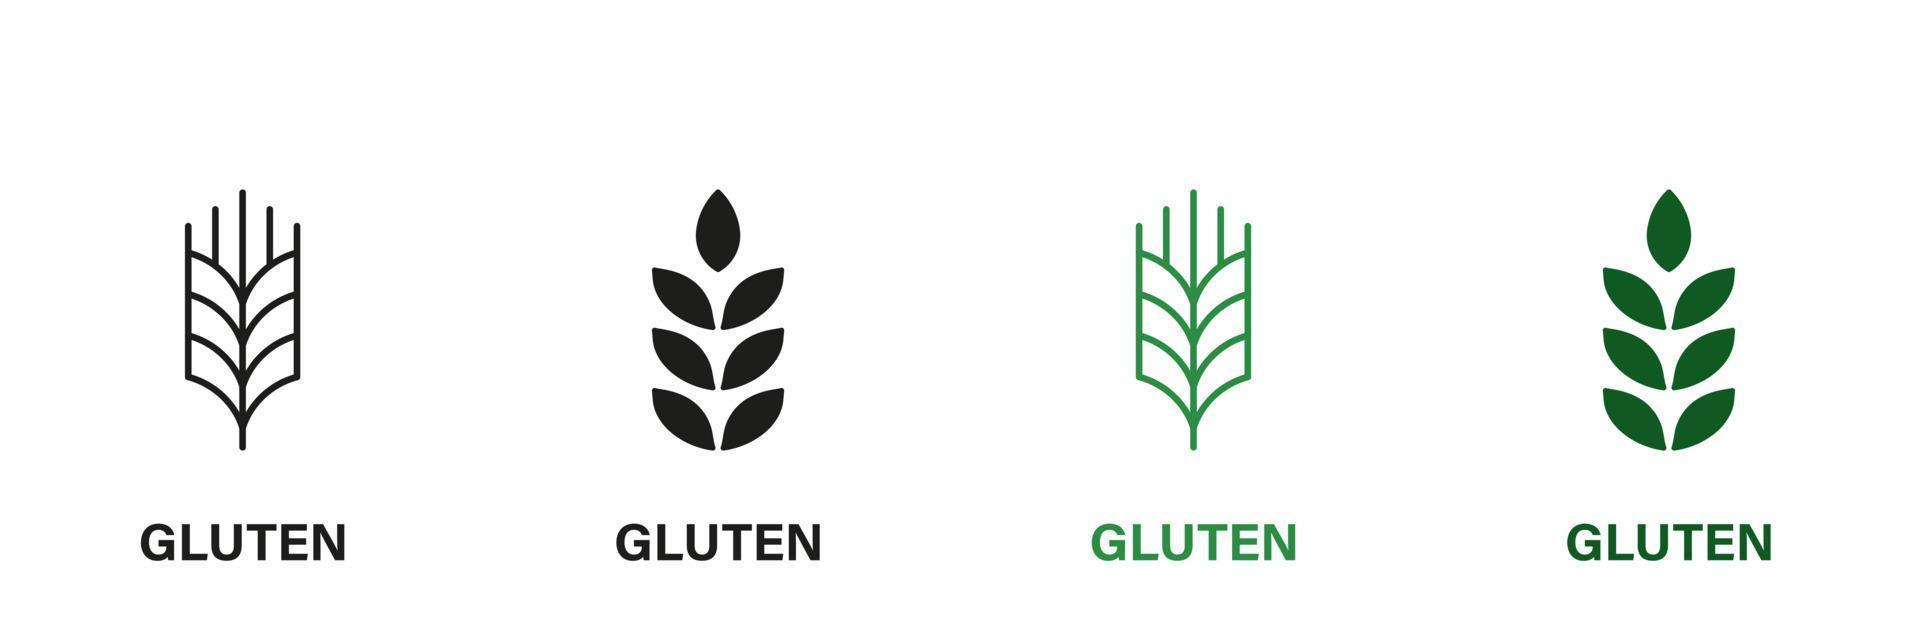 gluten ingredientes línea y silueta icono colocar. trigo alergia producto verde y negro pictograma. orgánico cereal semilla símbolo colección en blanco antecedentes. aislado vector ilustración.